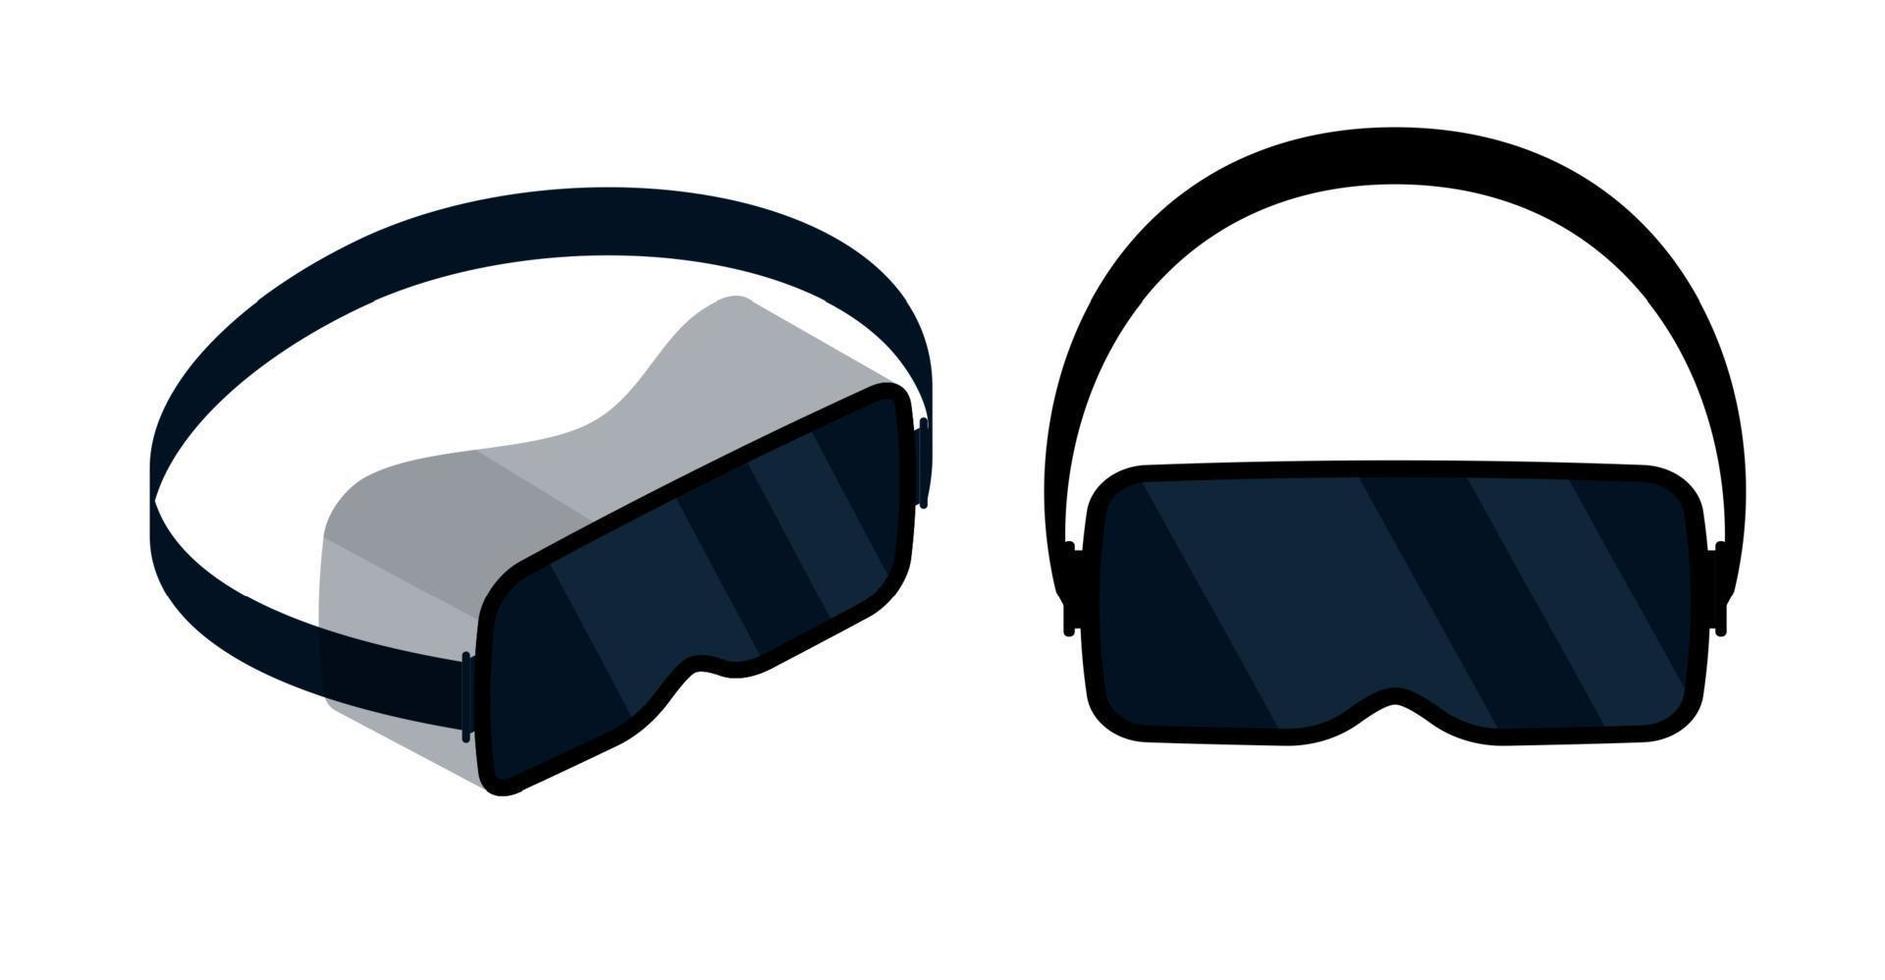 vr glasögon vektor virtuell verklighet headsetet ikon. virtuell verklighet hjälm isolerat glasögon enhet illustration